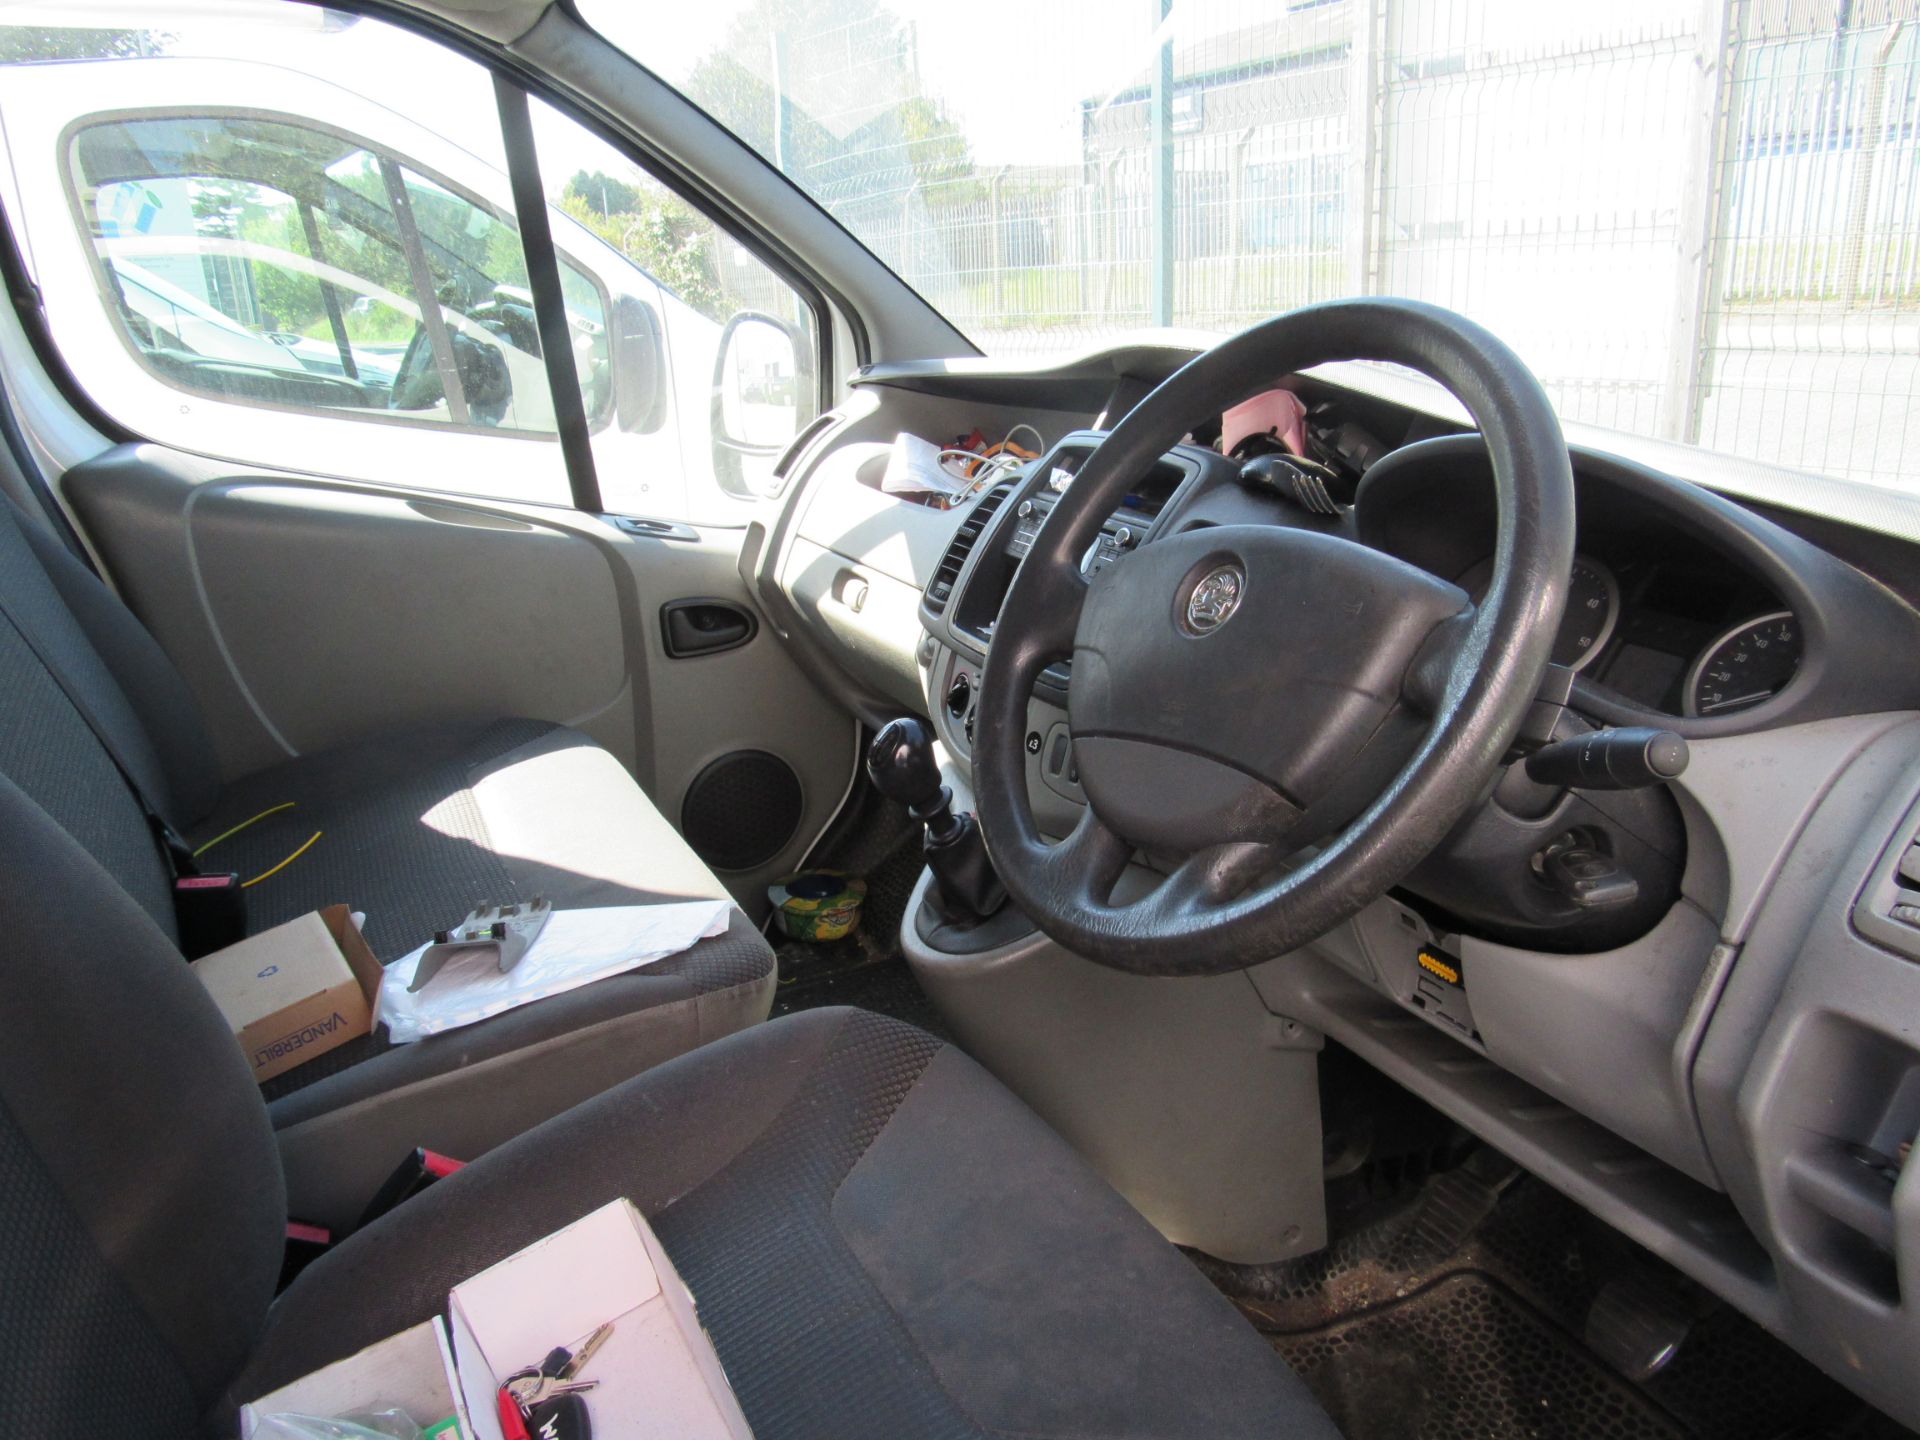 Vauxhall Vivaro van LM14 AHG, 355091 miles, Diesel, First Registered March 2014, MOT until 27 - Image 6 of 7